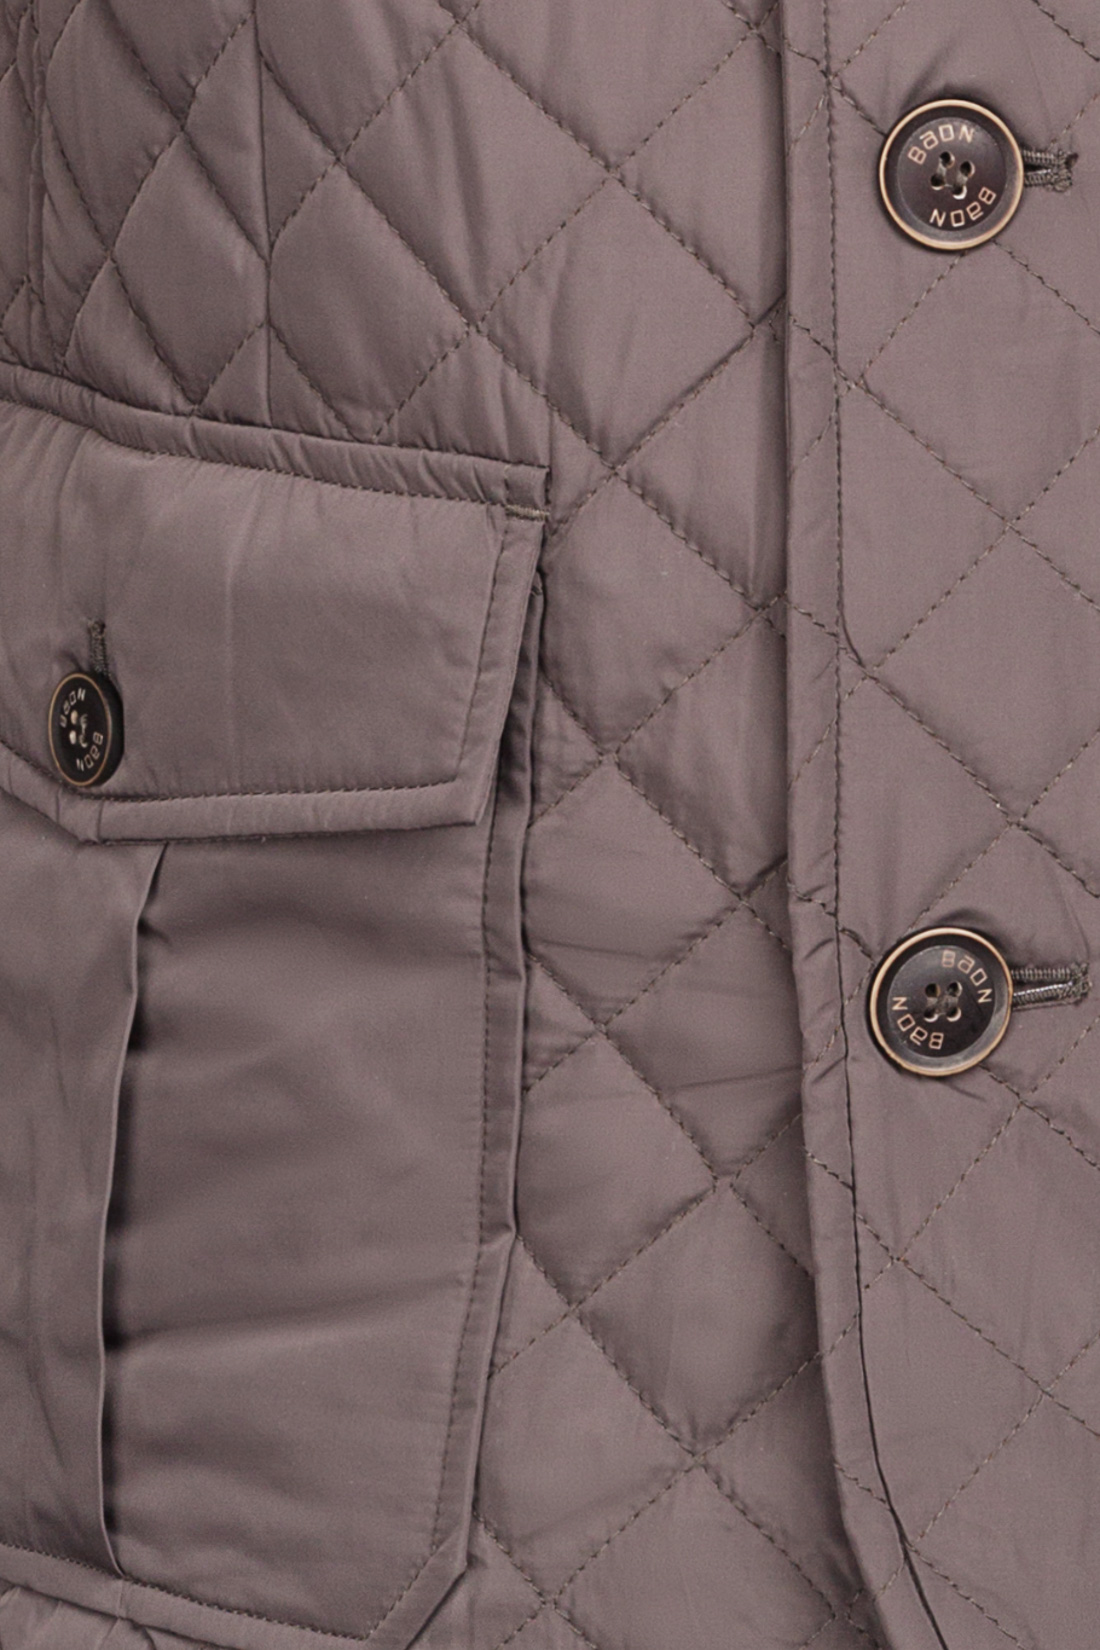 Классическая стёганая куртка (арт. baon B537023), размер L, цвет серый Классическая стёганая куртка (арт. baon B537023) - фото 3